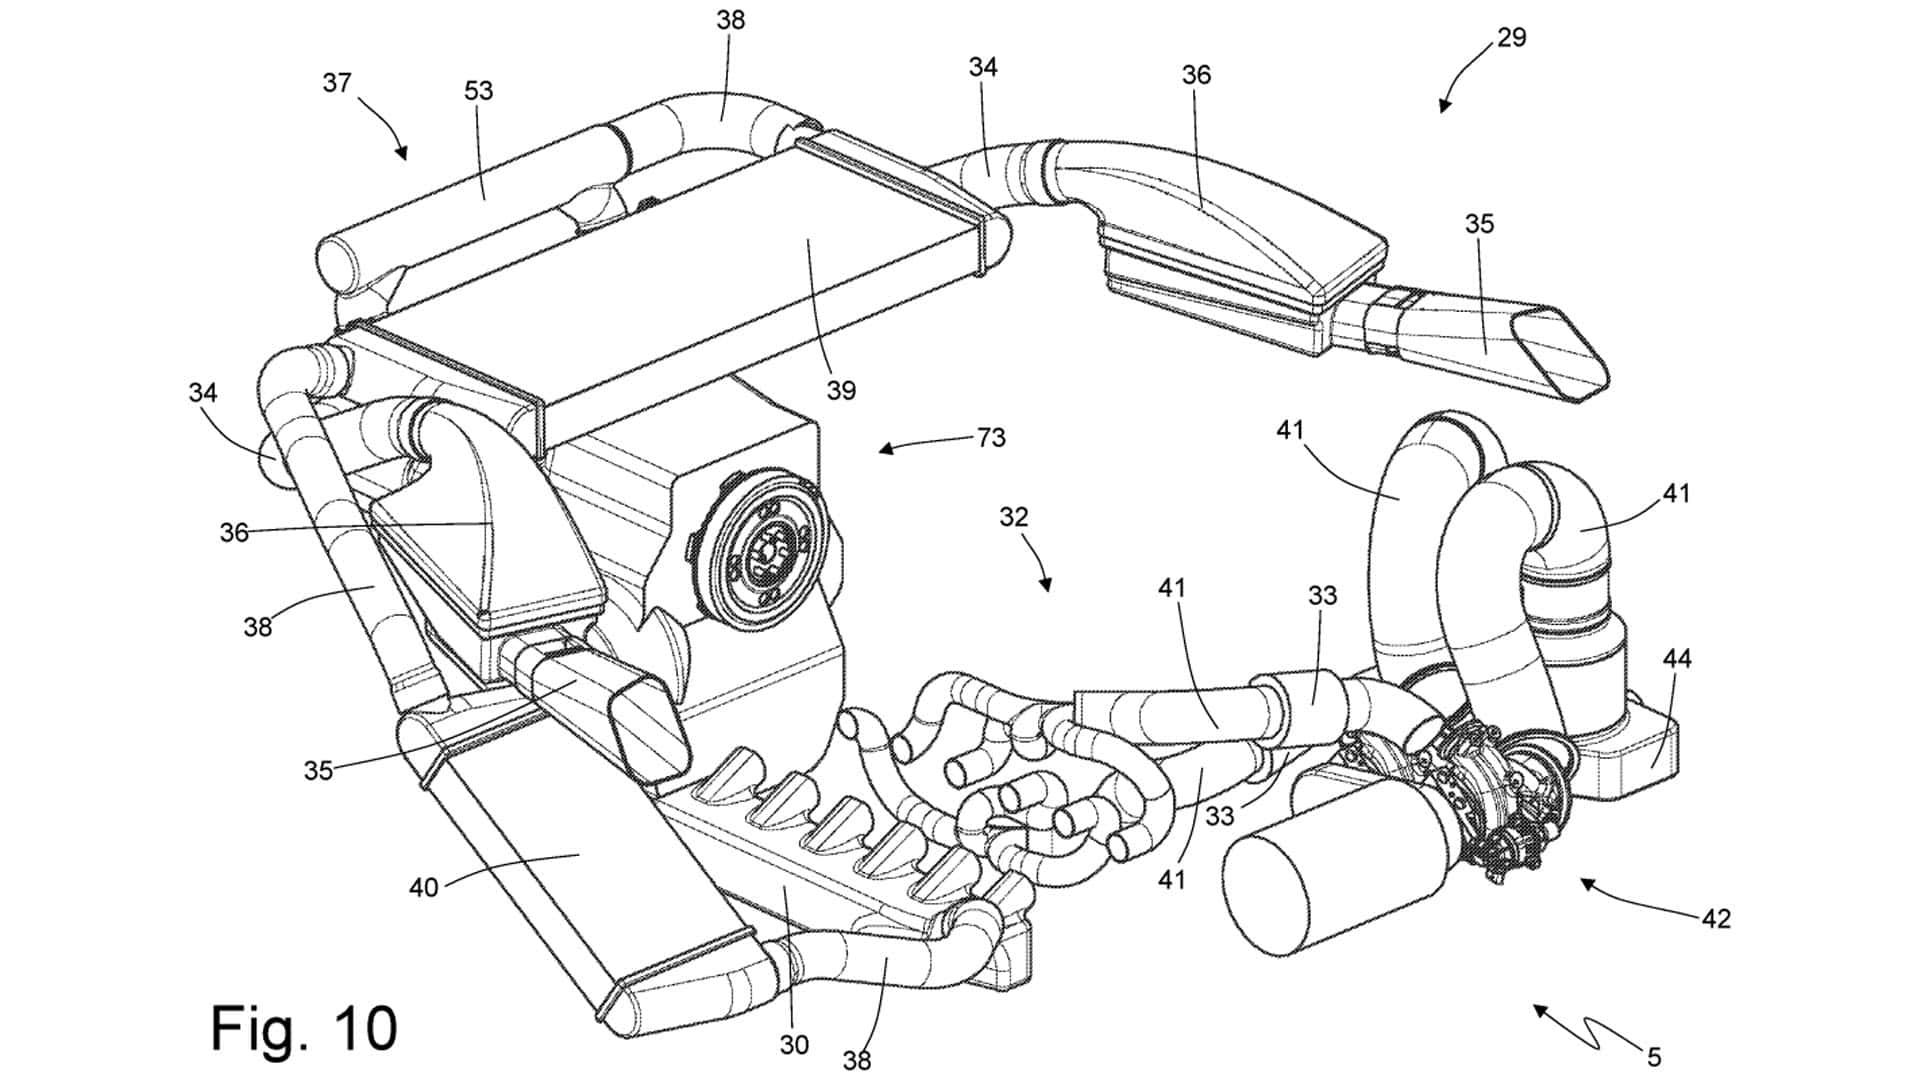 Foto del brevetto del motore a idrogeno proposto da Ferrari